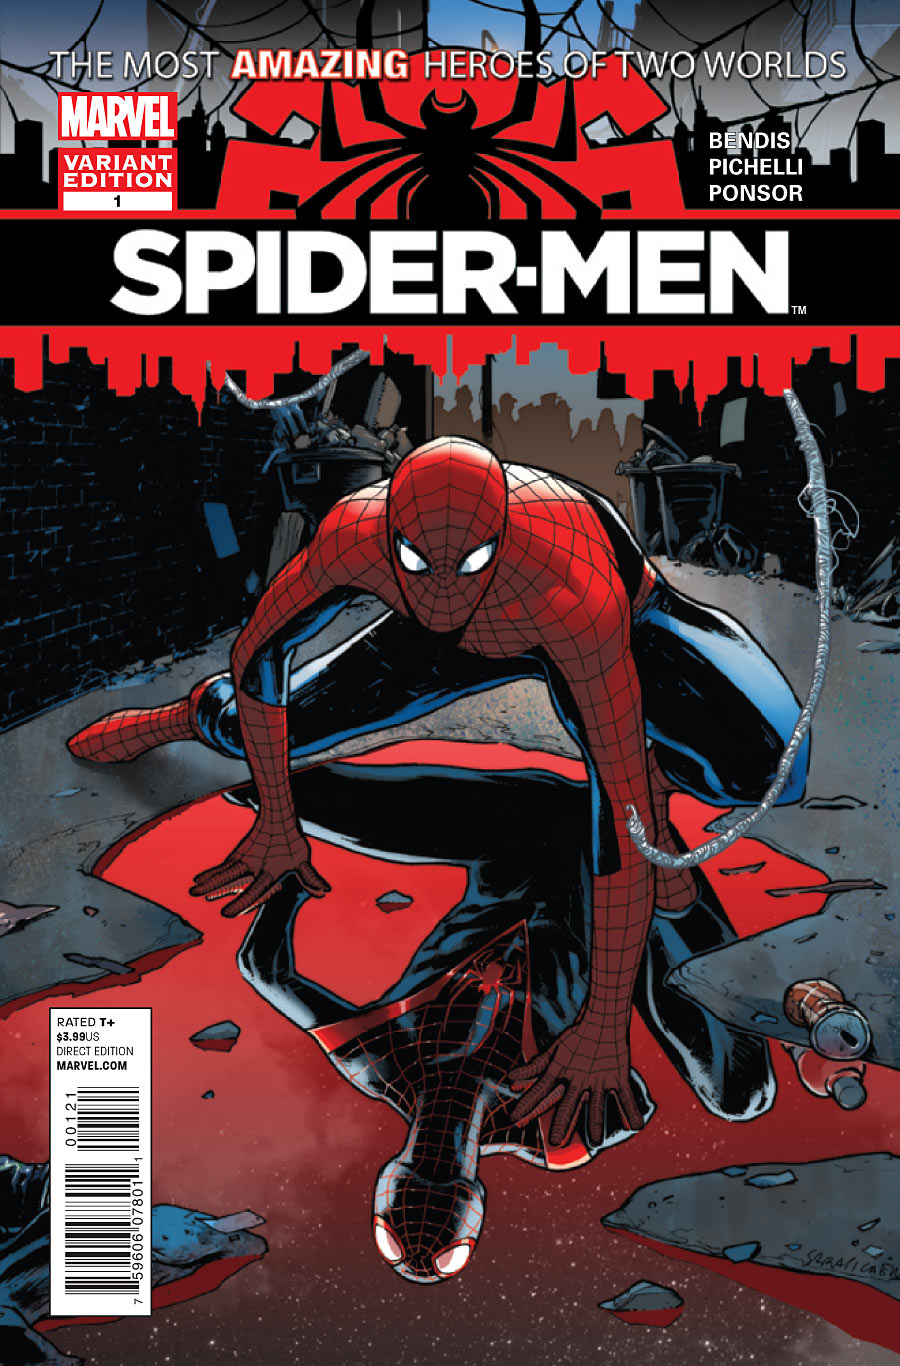 Spider-men Pics, Comics Collection